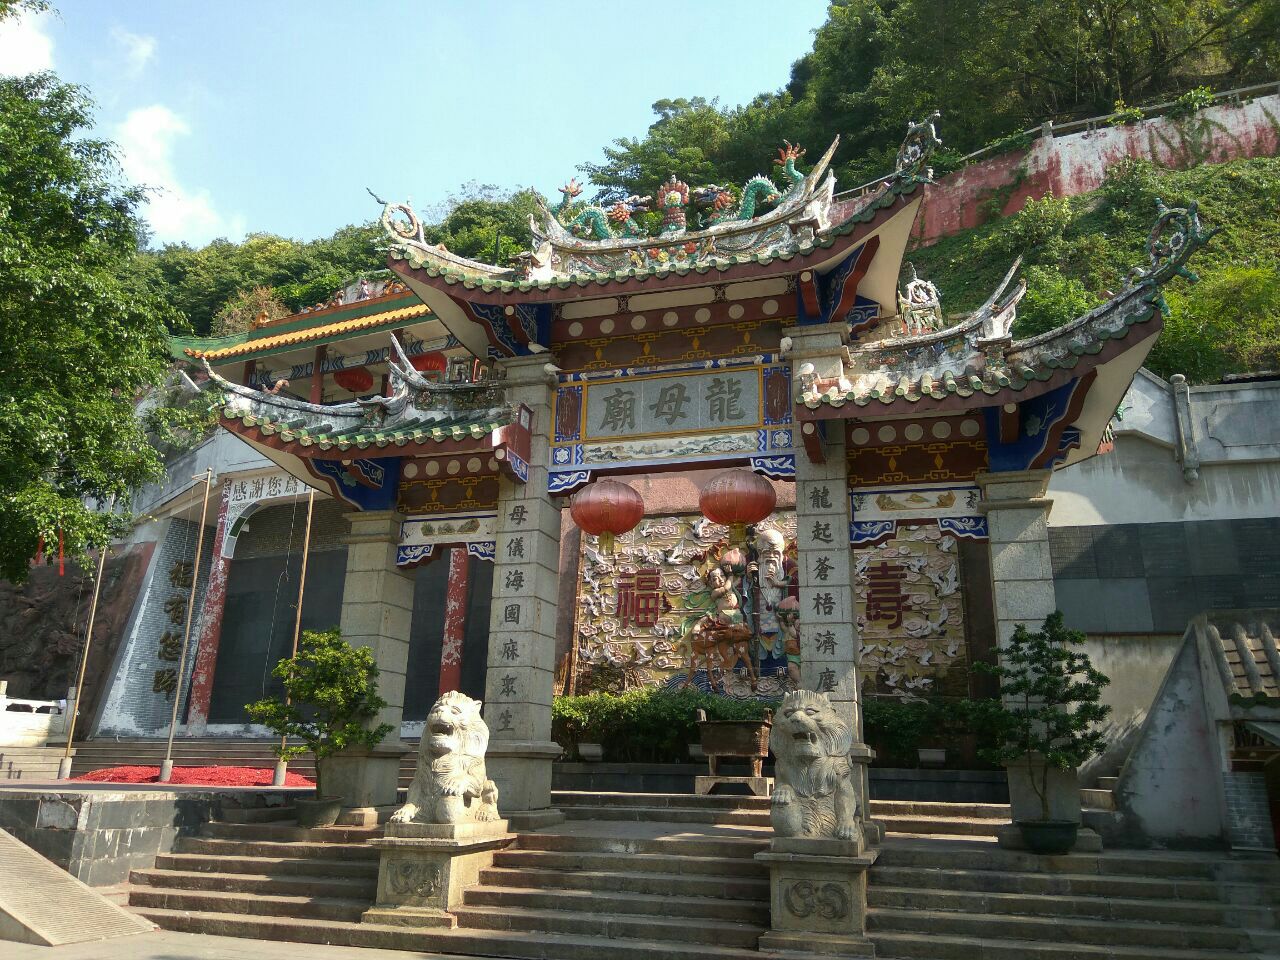 龙母太庙